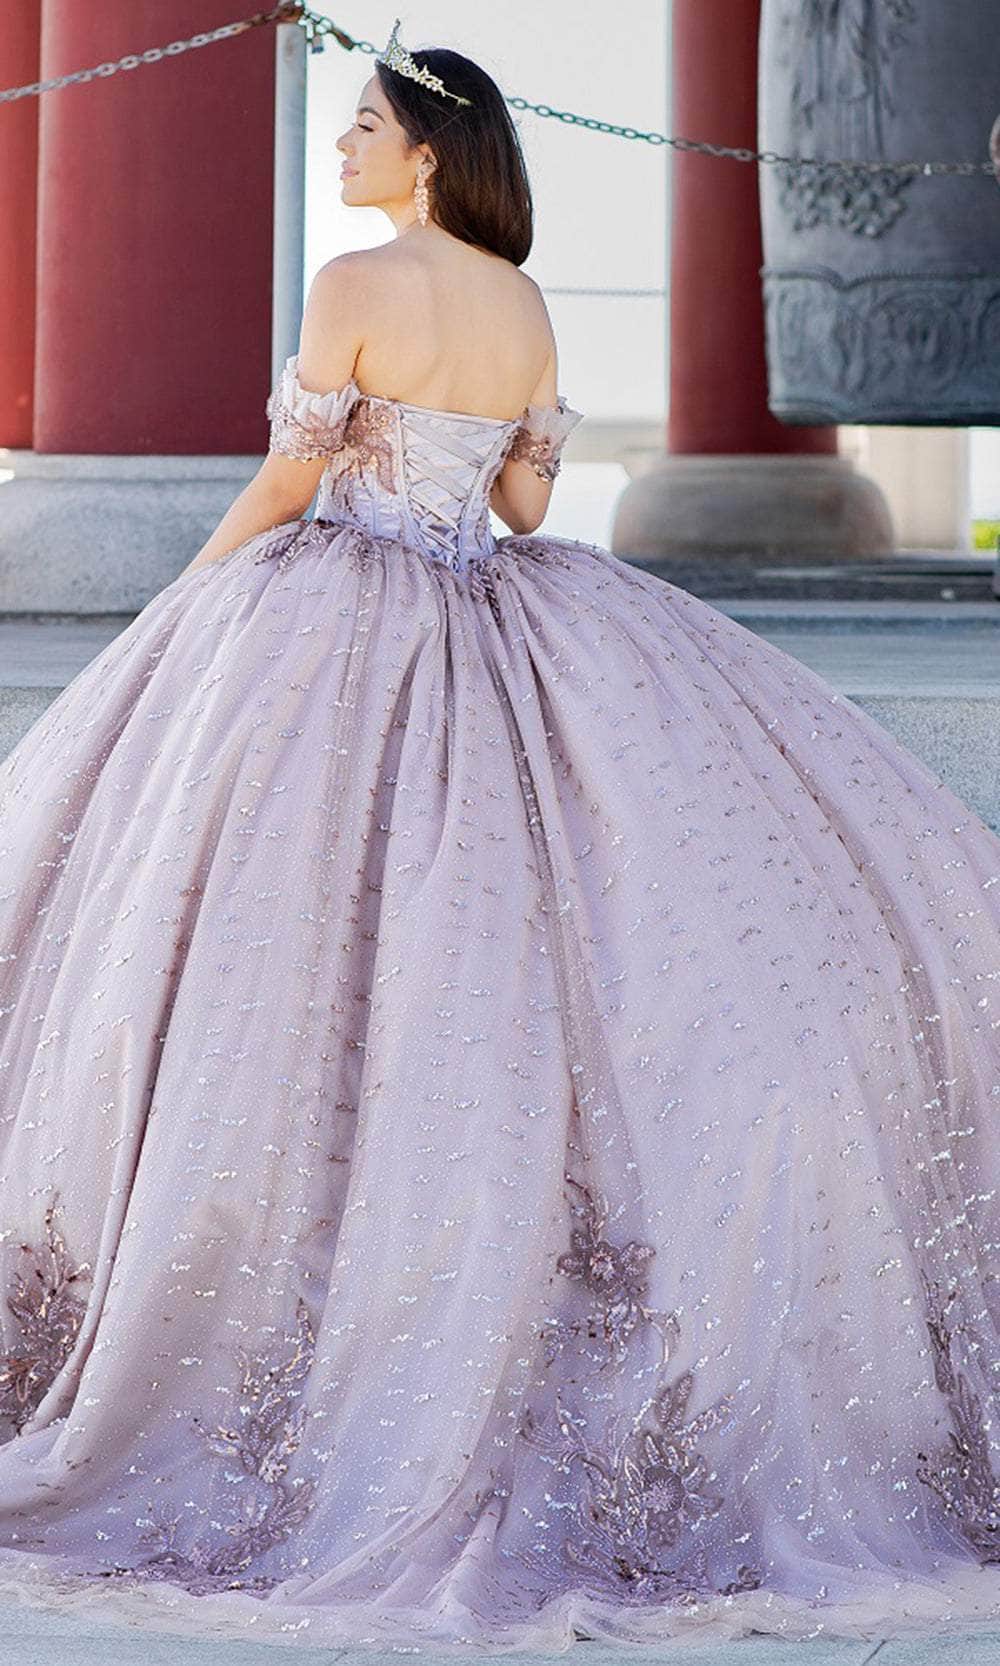 Cinderella's Gowns (@cinderellasgowns) • Instagram photos and videos